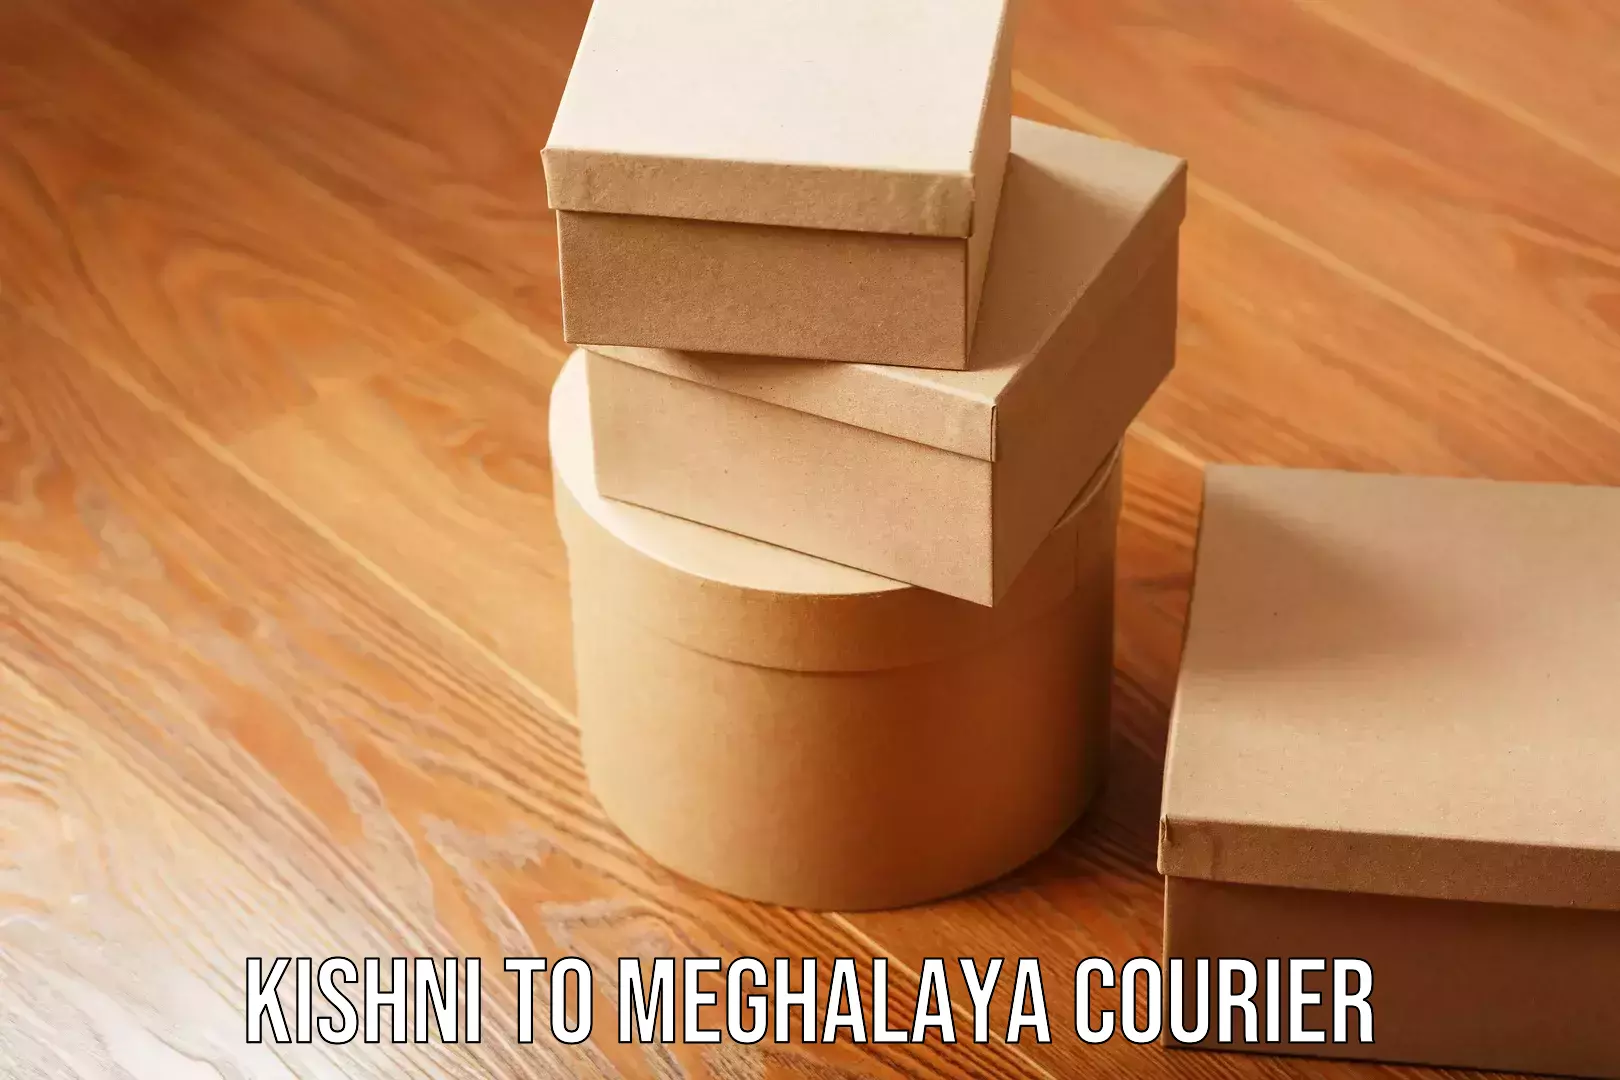 Affordable moving solutions Kishni to Meghalaya